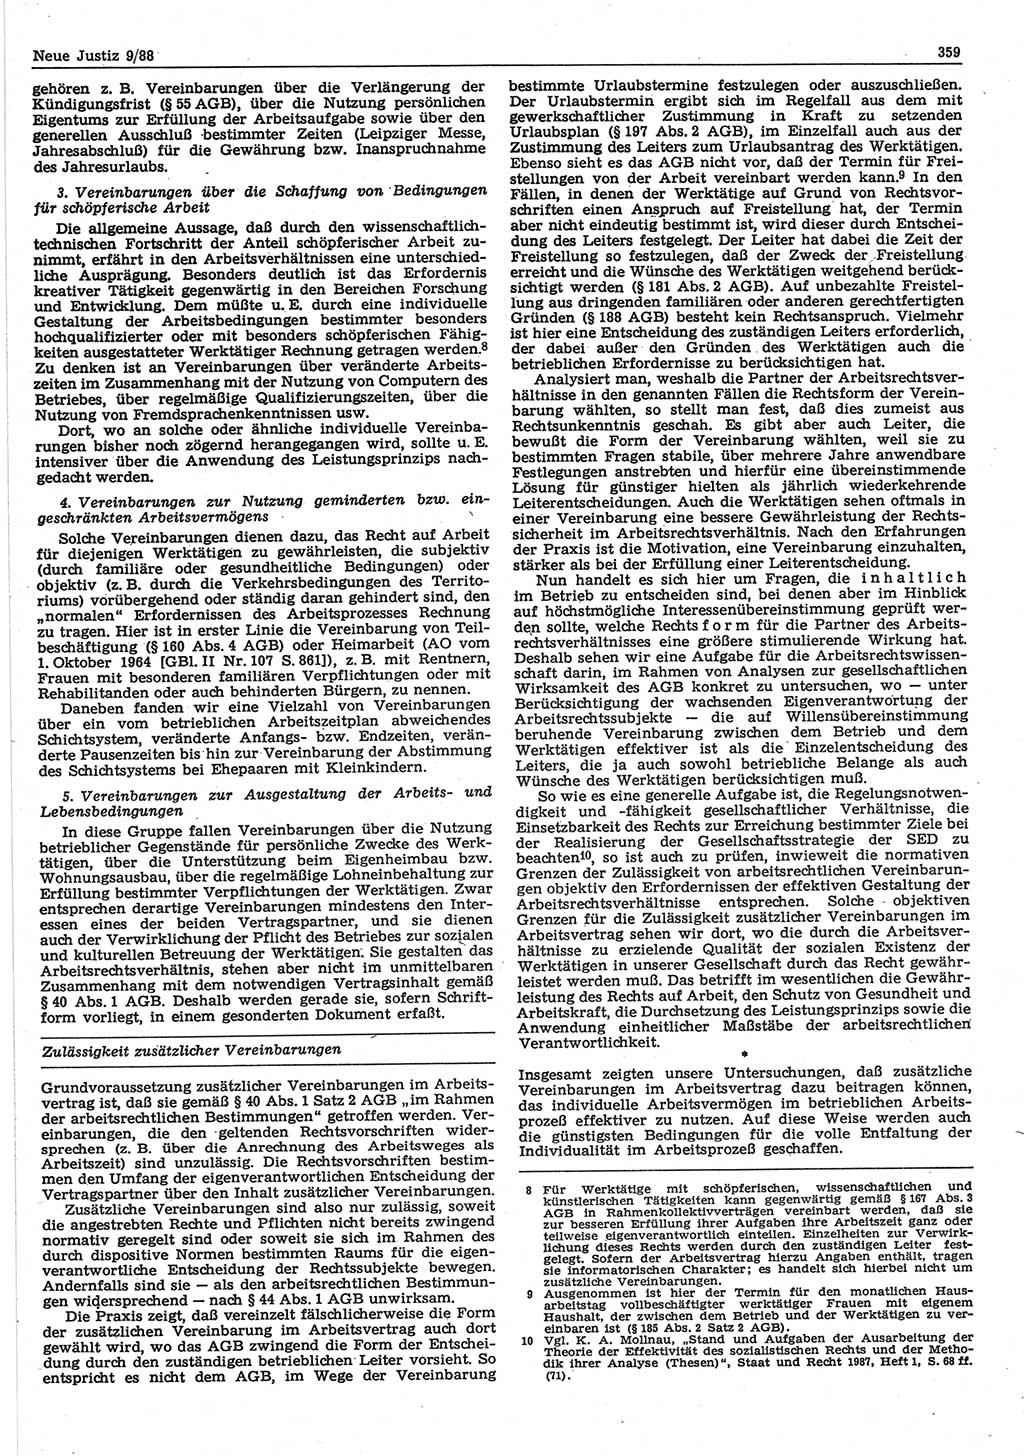 Neue Justiz (NJ), Zeitschrift für sozialistisches Recht und Gesetzlichkeit [Deutsche Demokratische Republik (DDR)], 42. Jahrgang 1988, Seite 359 (NJ DDR 1988, S. 359)